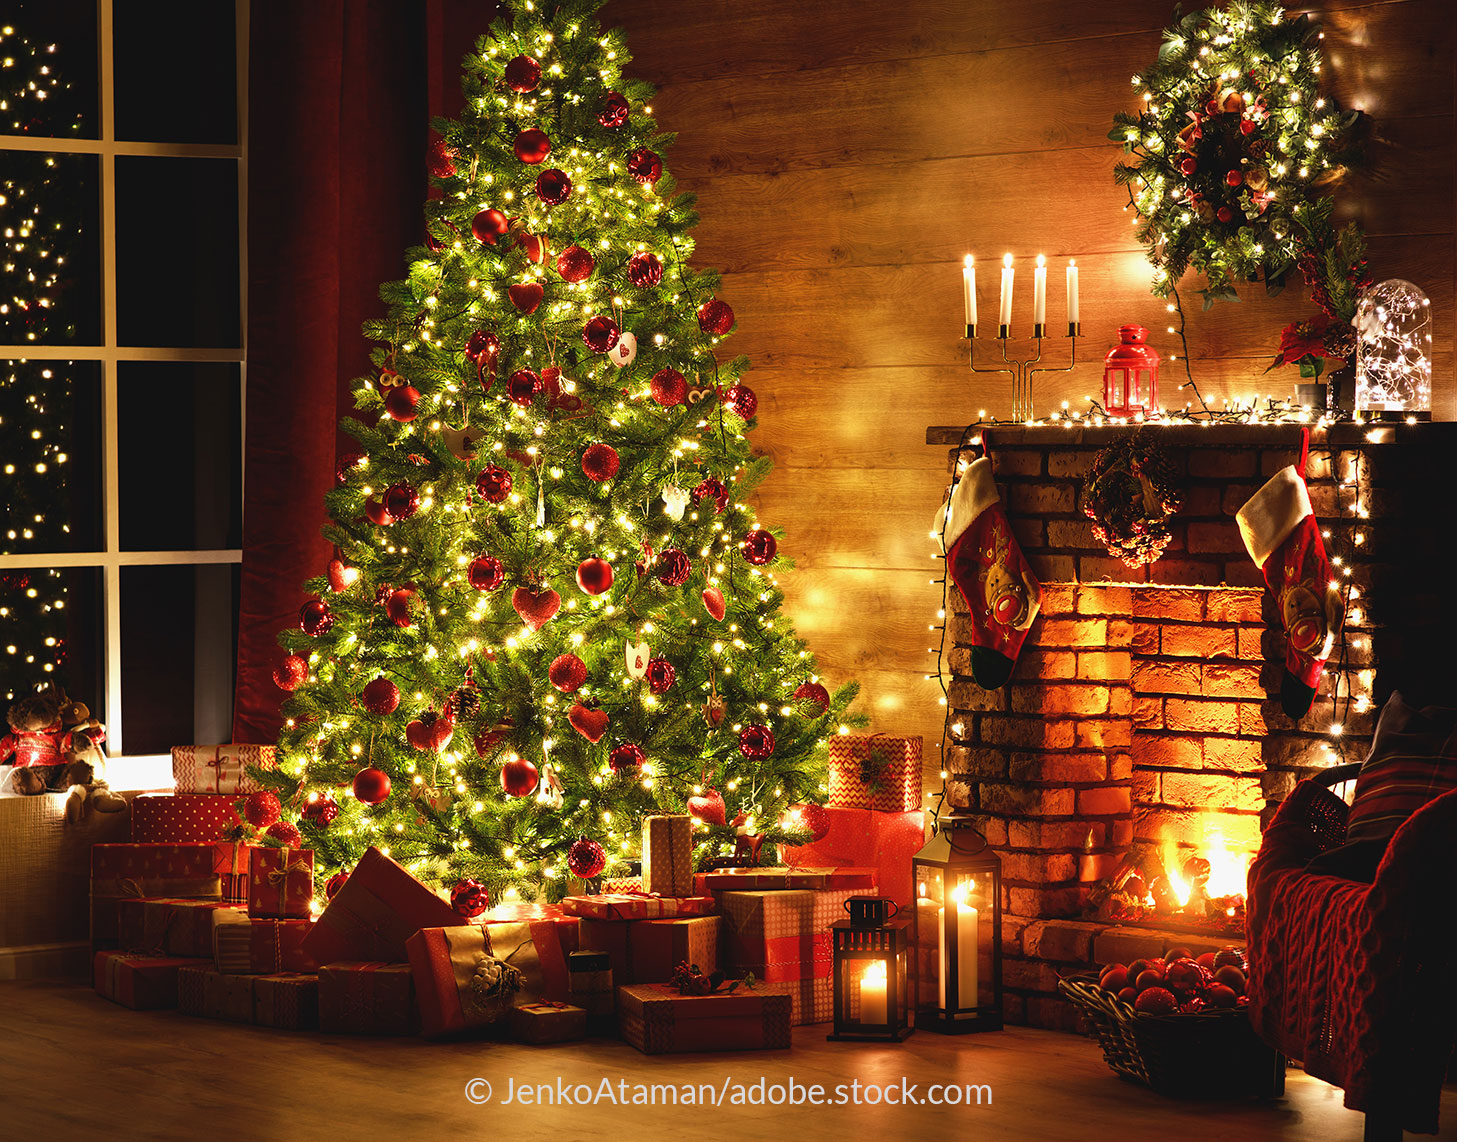 Ein herzlich bedecktes Wohnzimmer mit Geschenken, Weihnachtsbaum und einem Feuer im Kamin